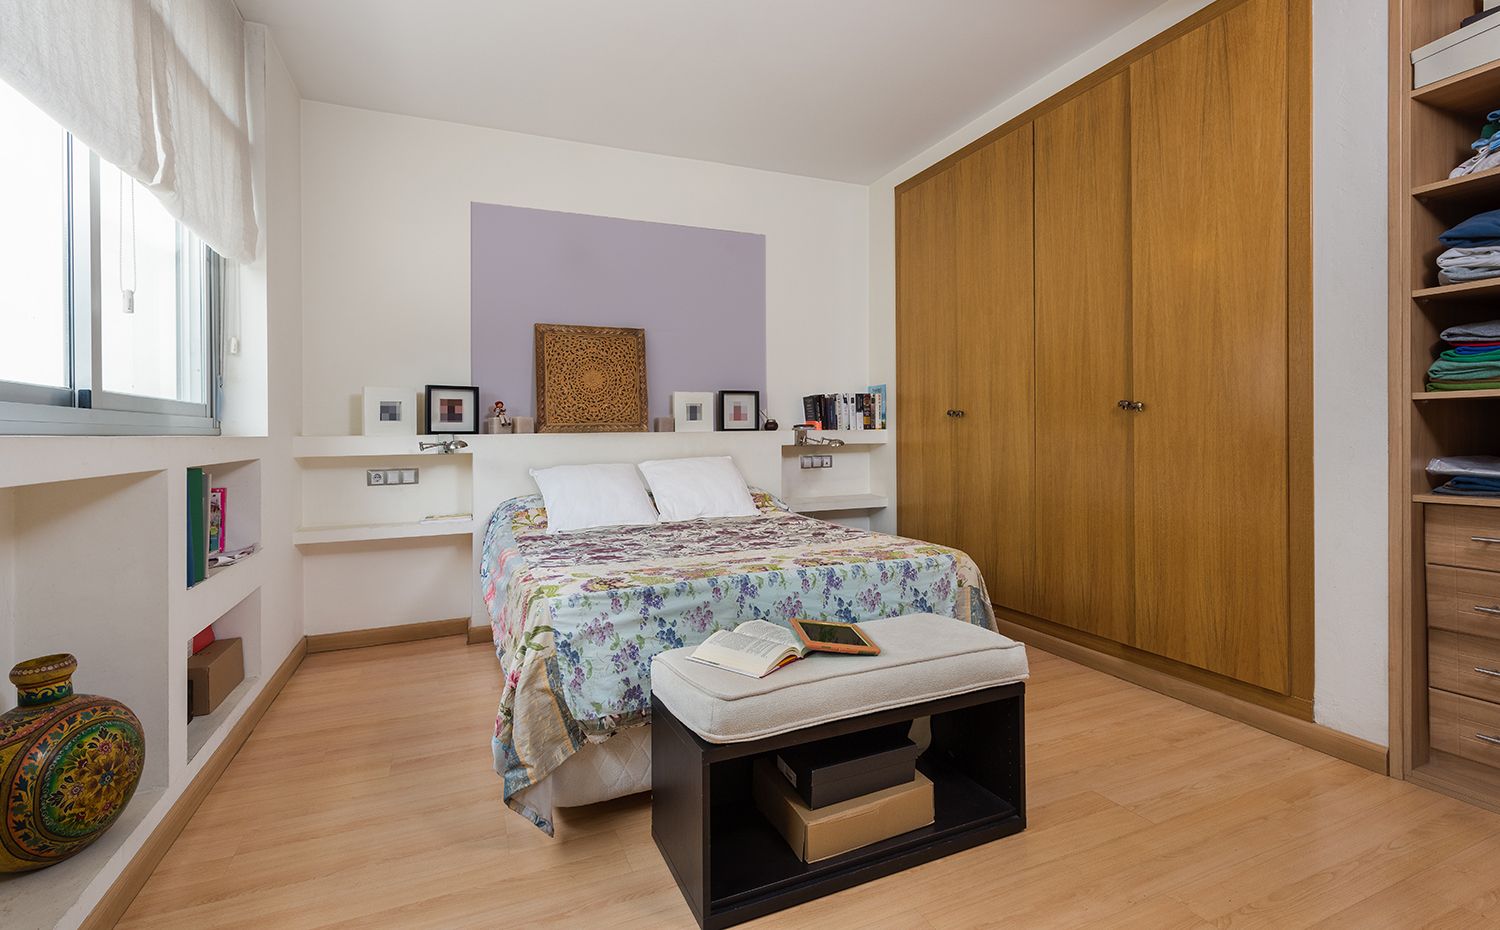 10,Tiro de Linea,fotowork.es. En los dormitorios se combina el blanco impoluto con madera natural buscando crear espacios cálidos y acogedores